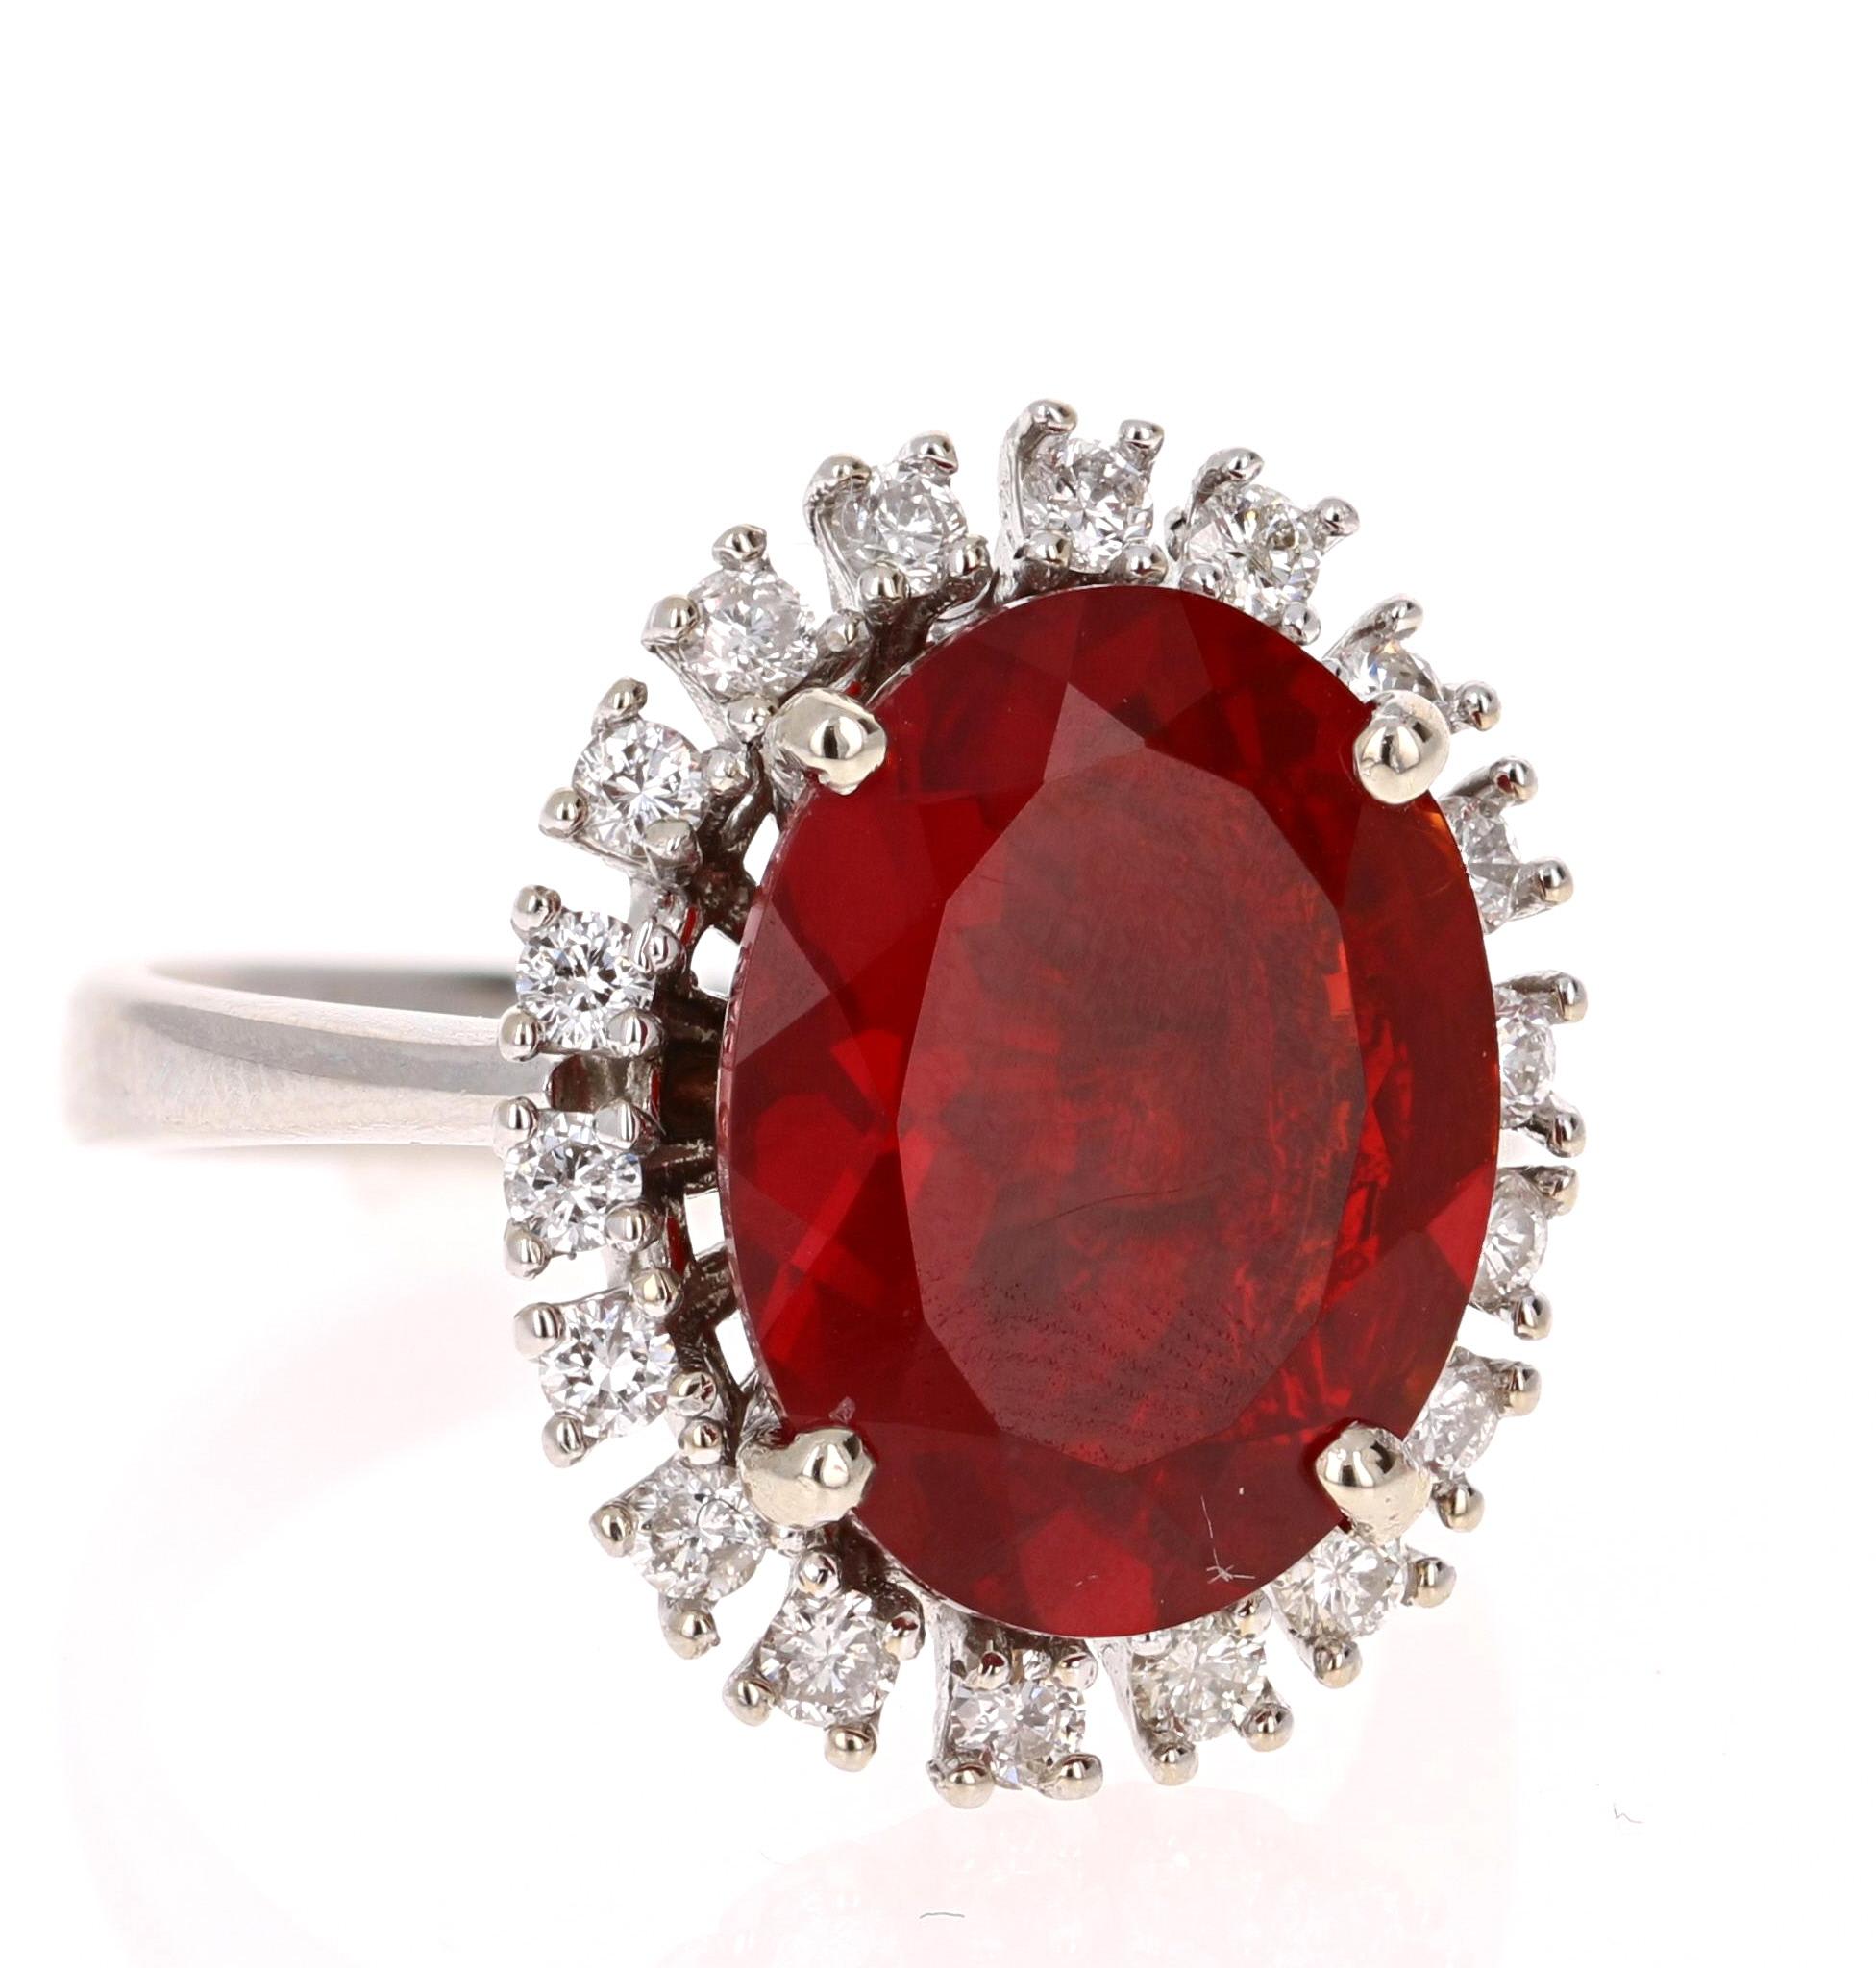 Diese starke und scharfe  Red Fire Opal Ring ist einfach atemberaubend!

Der Feueropal wiegt 3,87 Karat und ist von 18 Diamanten im Rundschliff umgeben, die 0,52 Karat wiegen. 

Er ist in 14K Weißgold gefasst und wiegt ungefähr 6,8 Gramm. 

Die